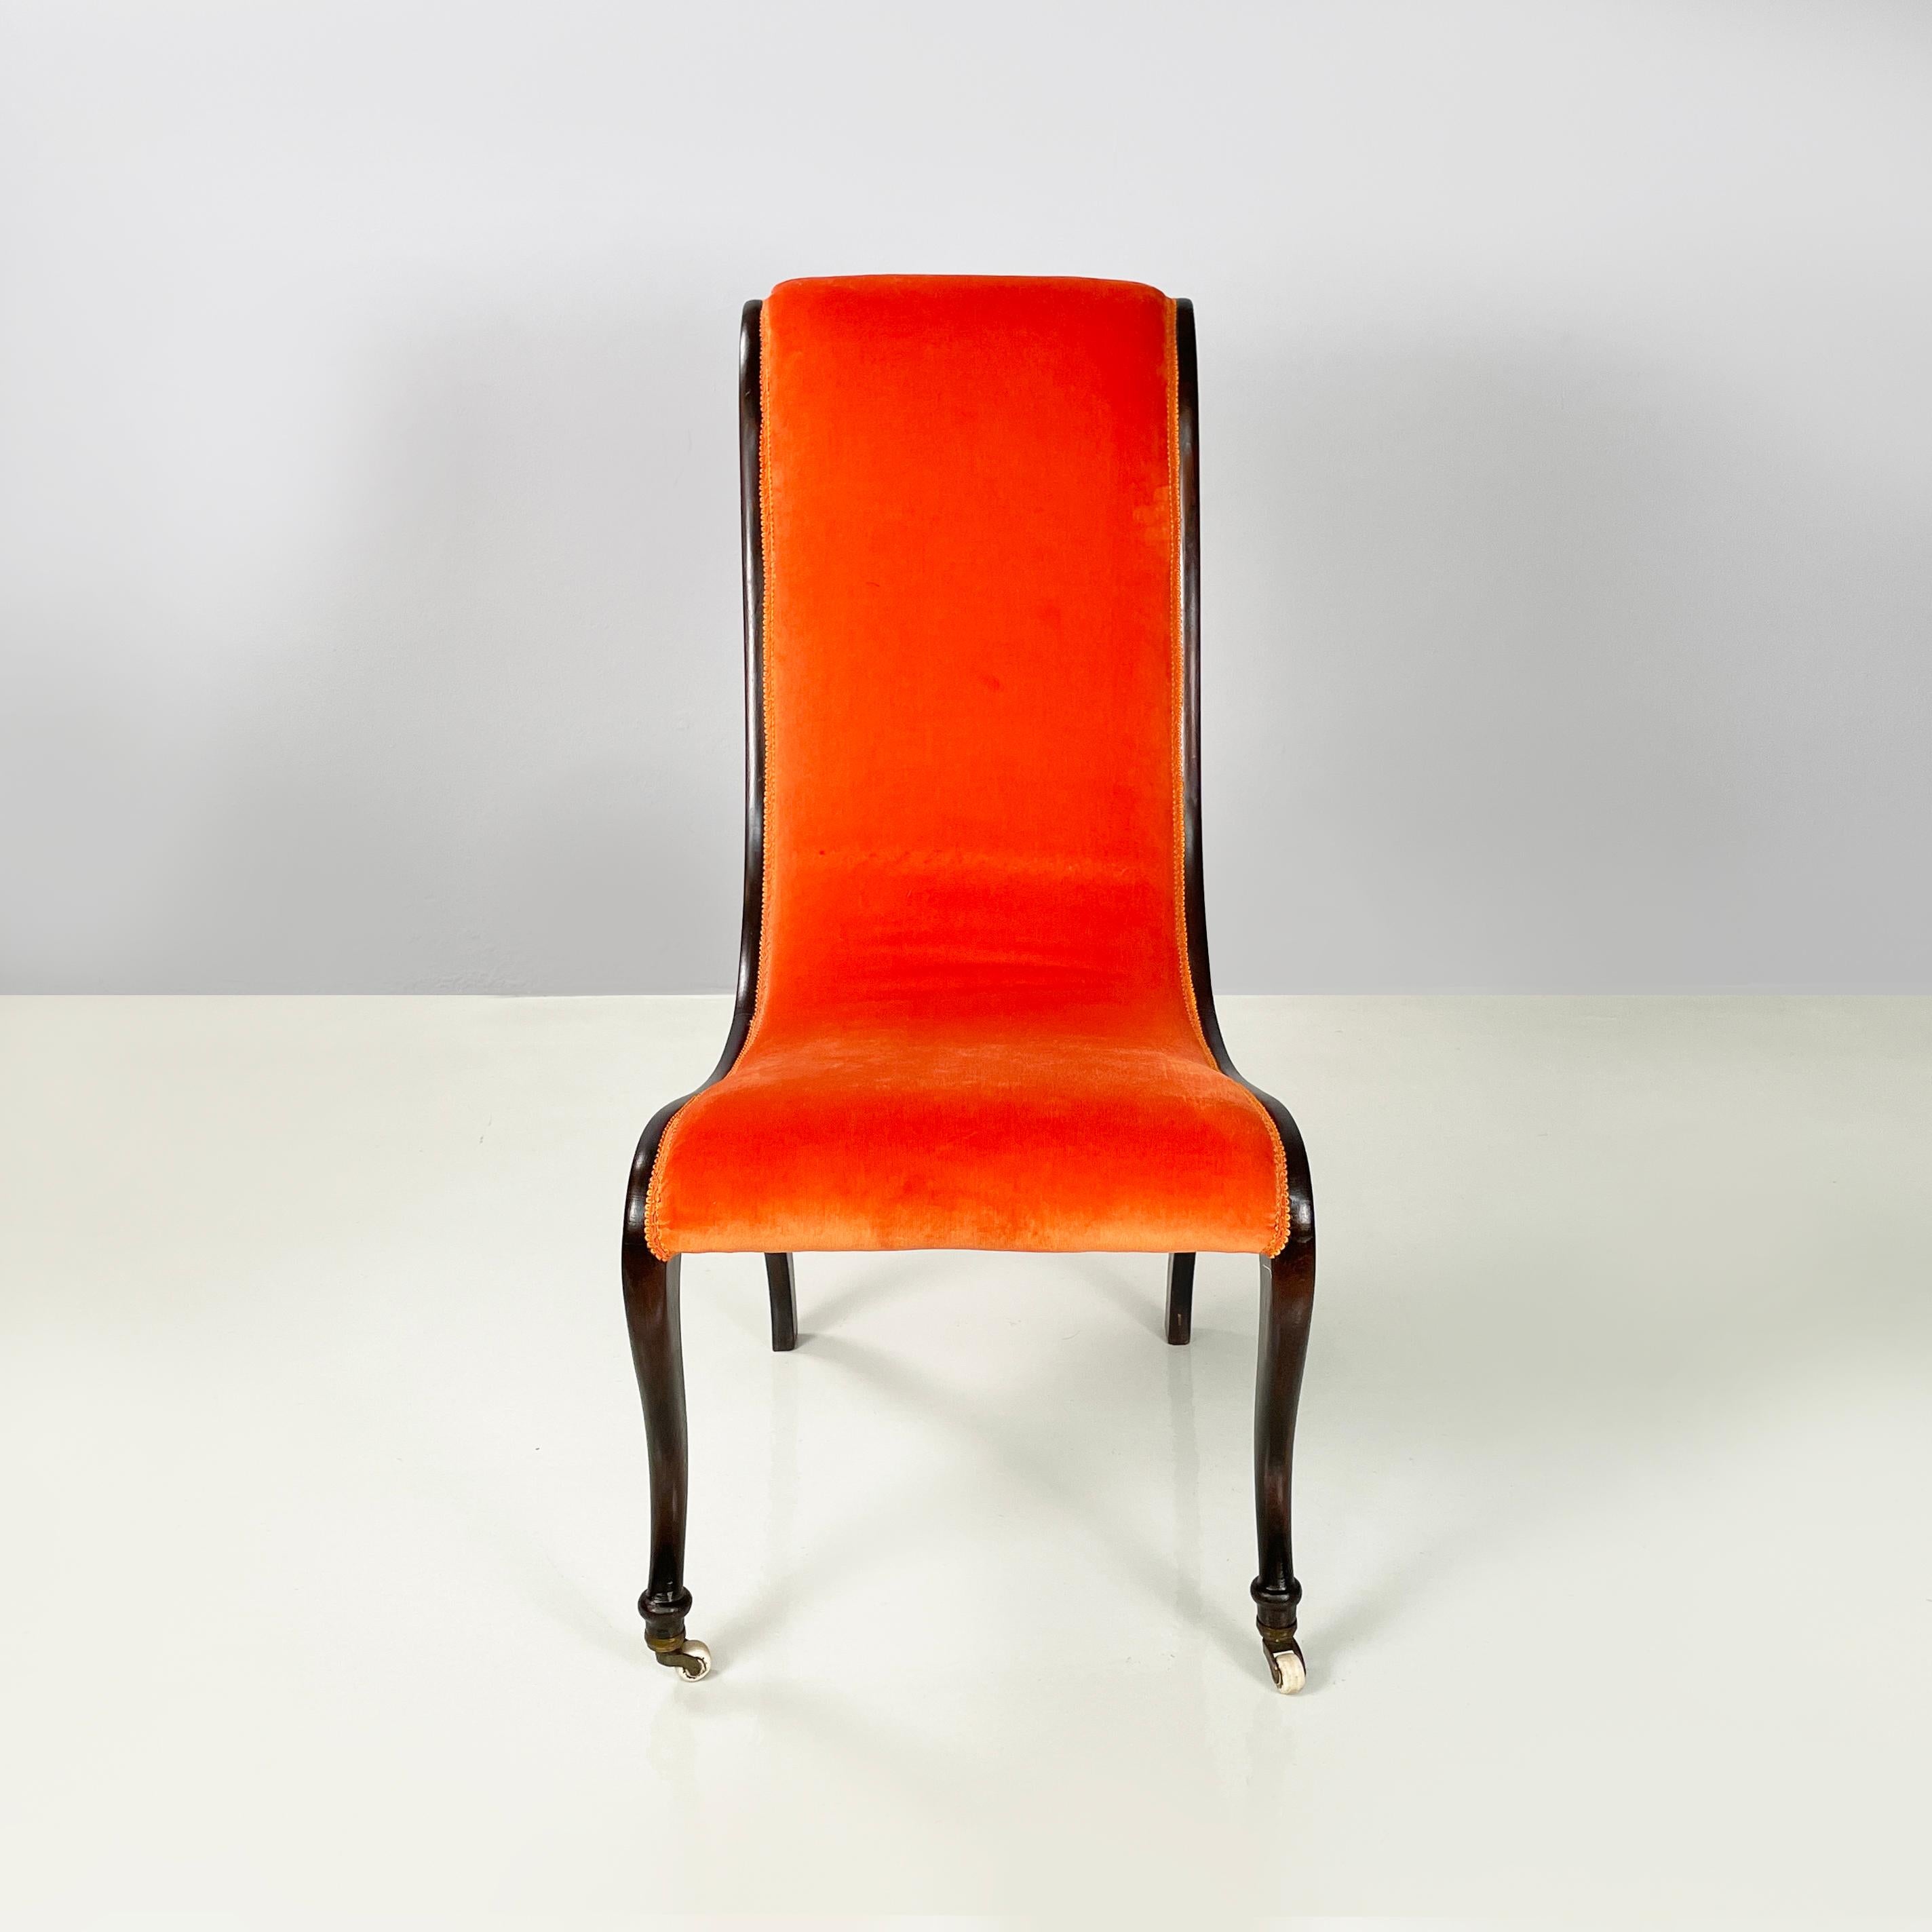 Dänischer Stuhl aus der Mitte des Jahrhunderts, orangefarbener Samt und dunkles Holz, 1950er Jahre
Stuhl mit gebogener Rückenlehne und Sitzfläche, gepolstert und mit leuchtend orangefarbenem Samtstoff bezogen. Die Ränder sind mit orangefarbenen